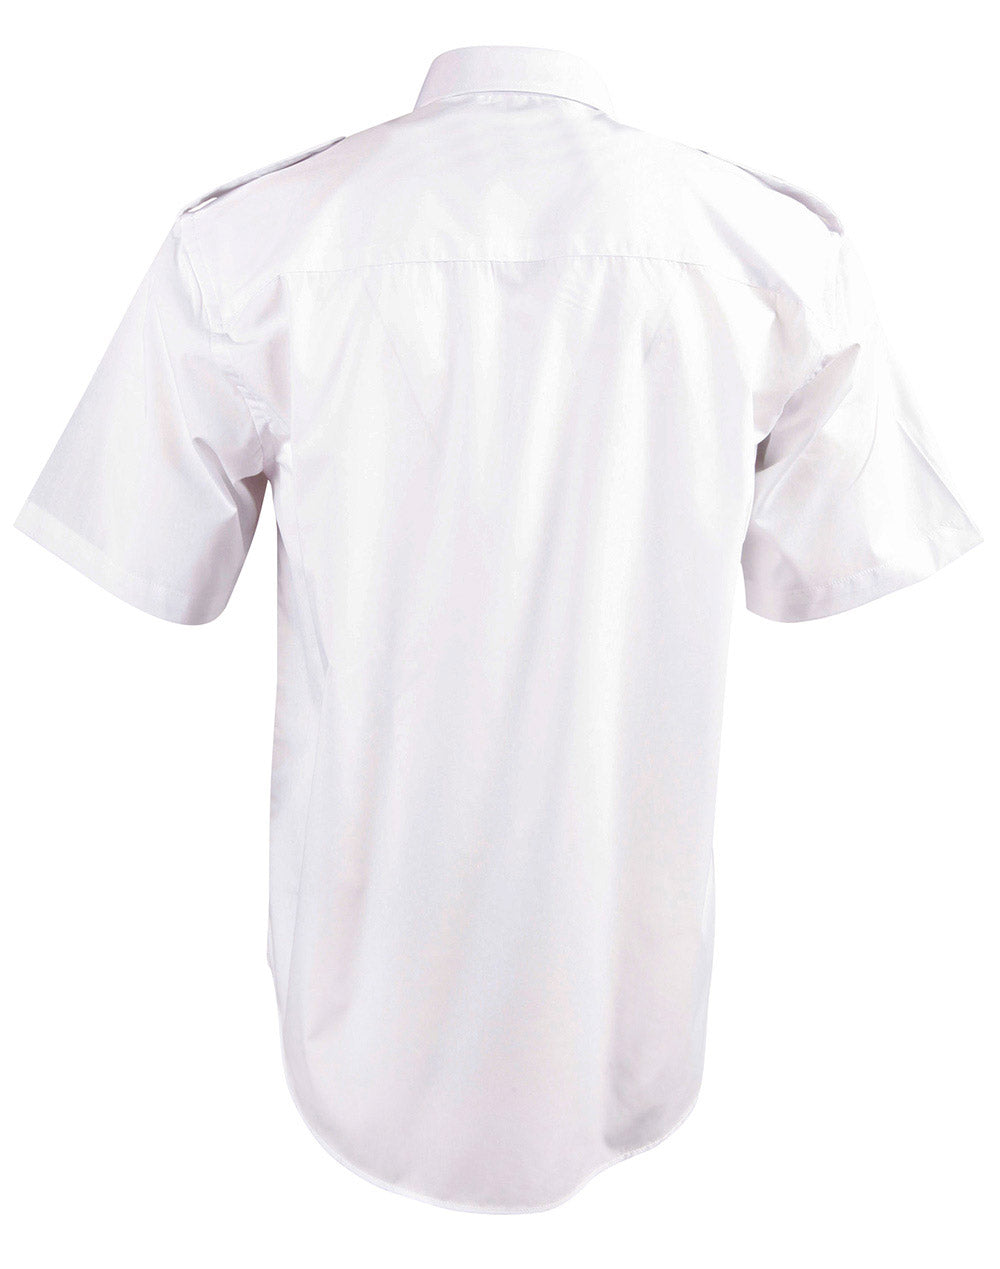 Winning Spirit Men's Short Sleeve Epaulette Shirts (BS06S)